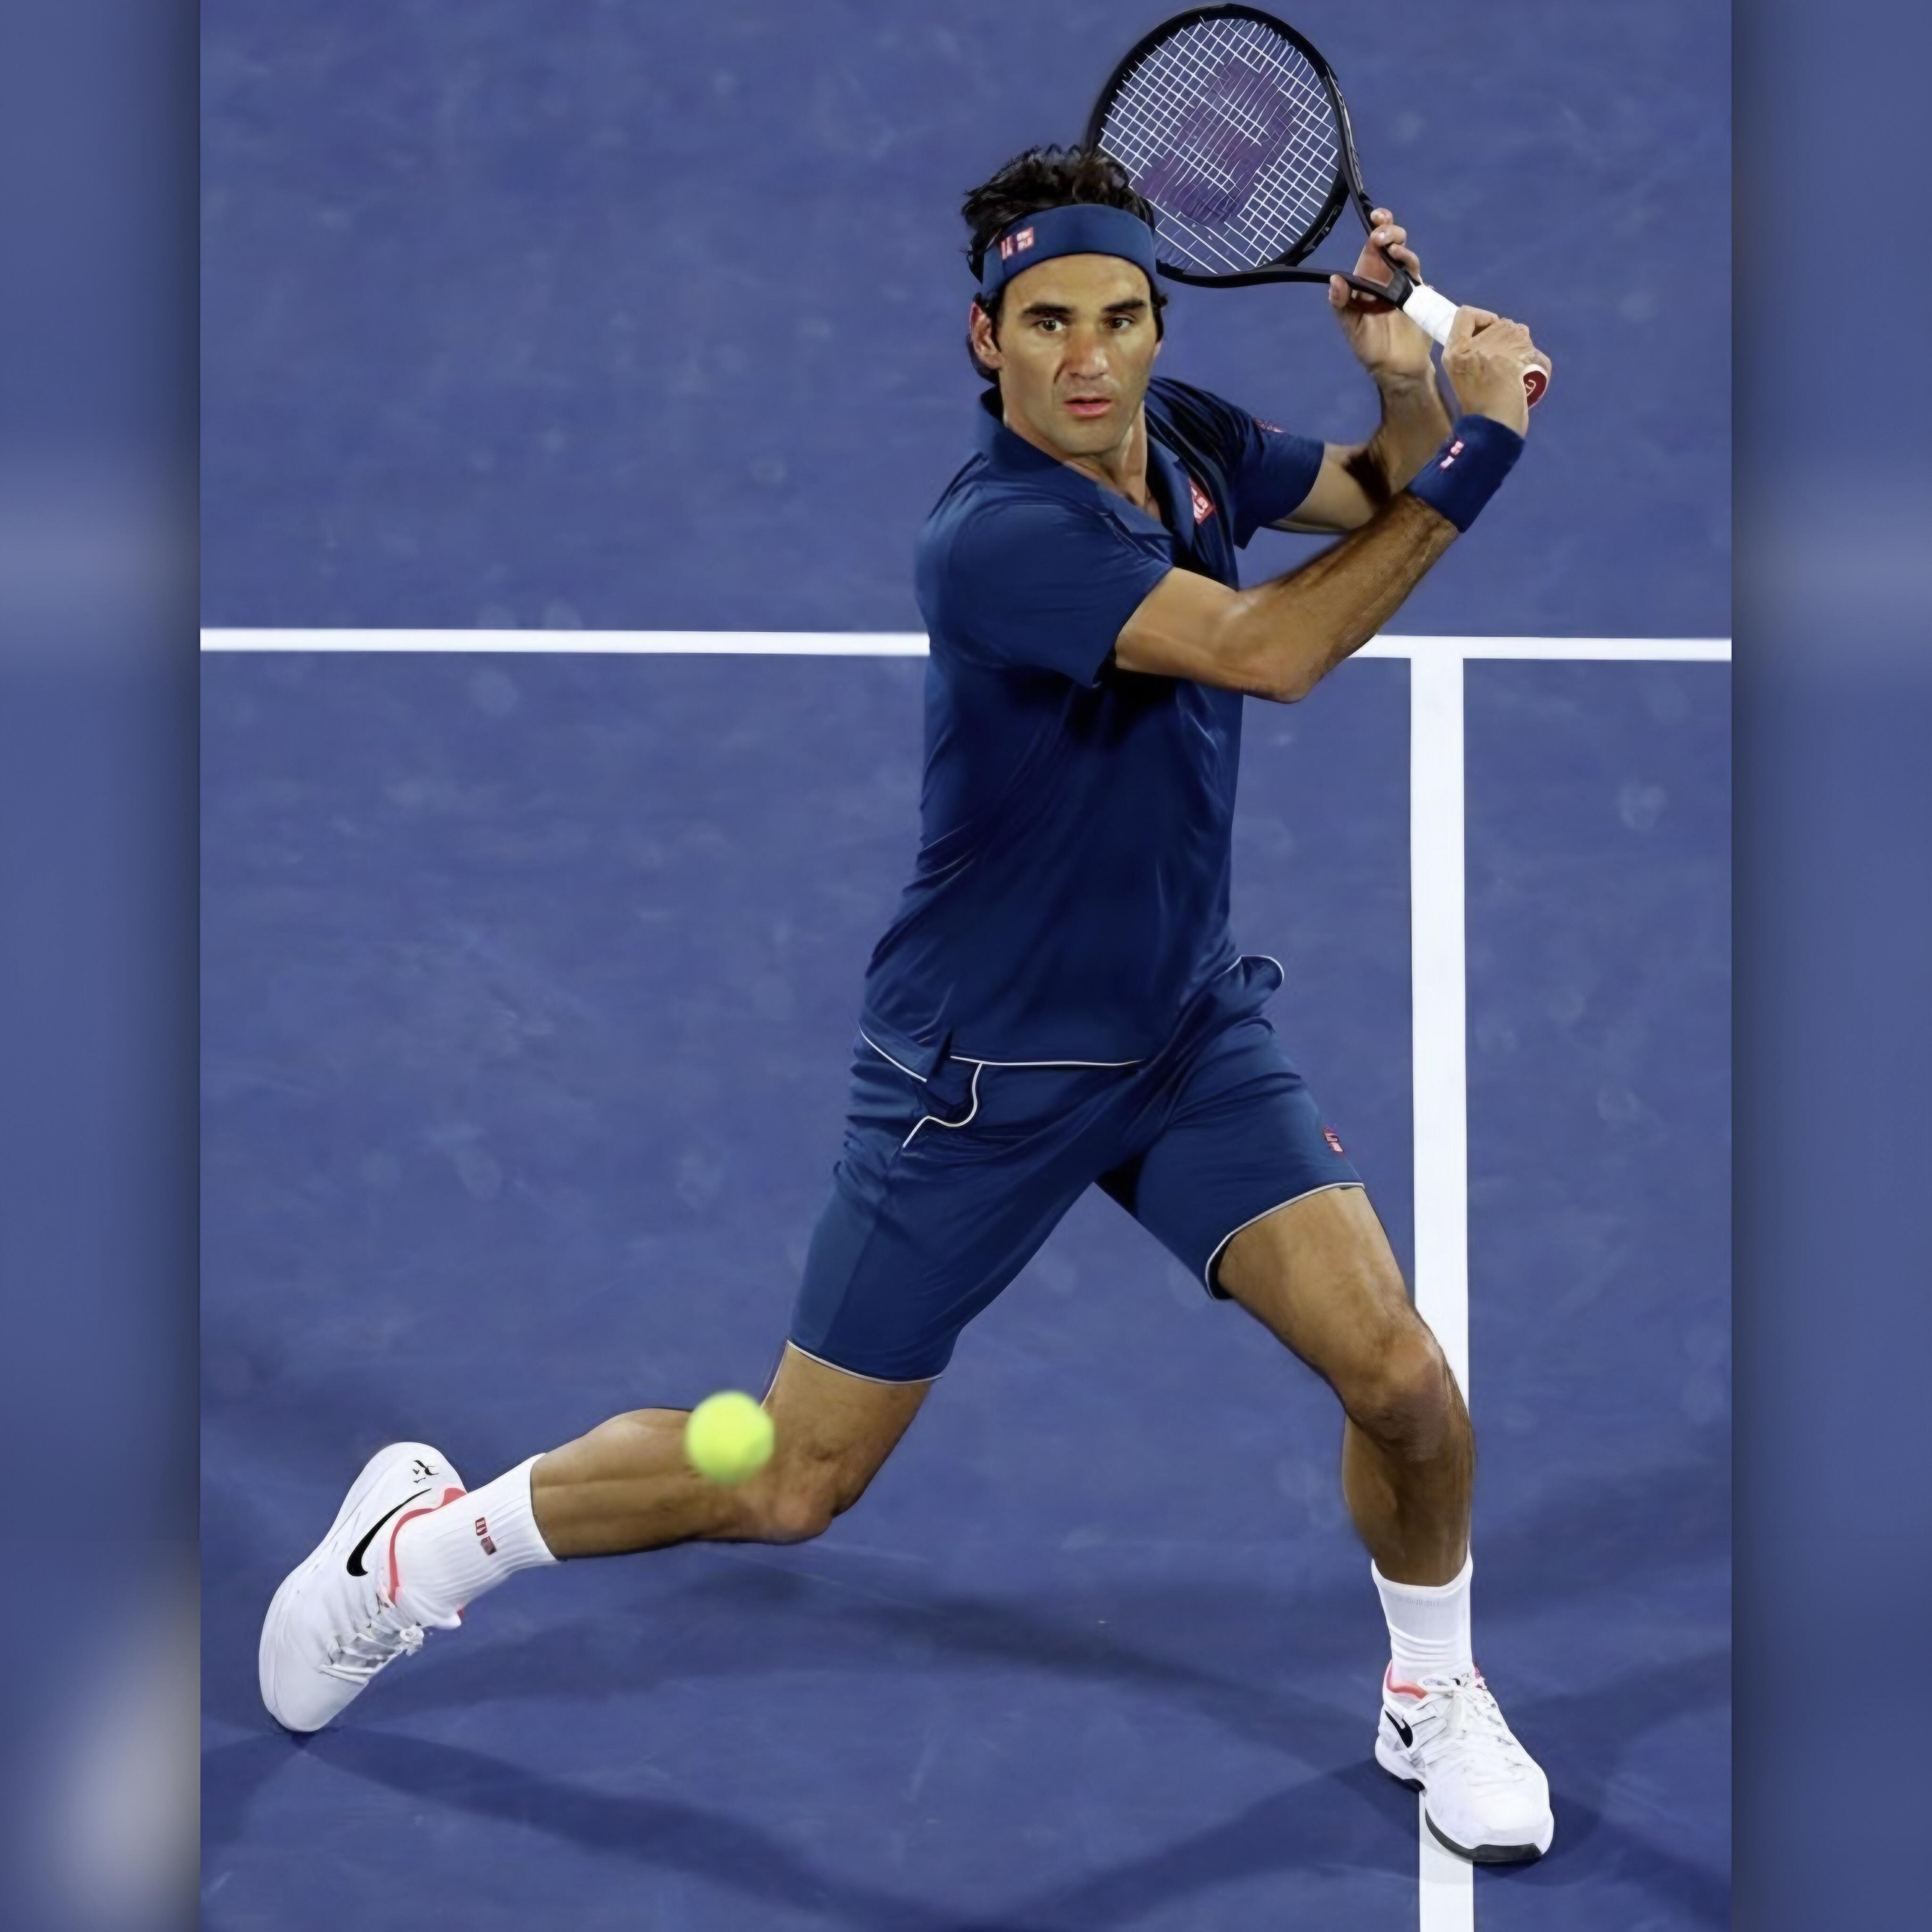 Tennis Kit News  UNIQLO Game Wear For Roger Federer At 2020 Australian  Open  10sBallscom  TennisBallscom